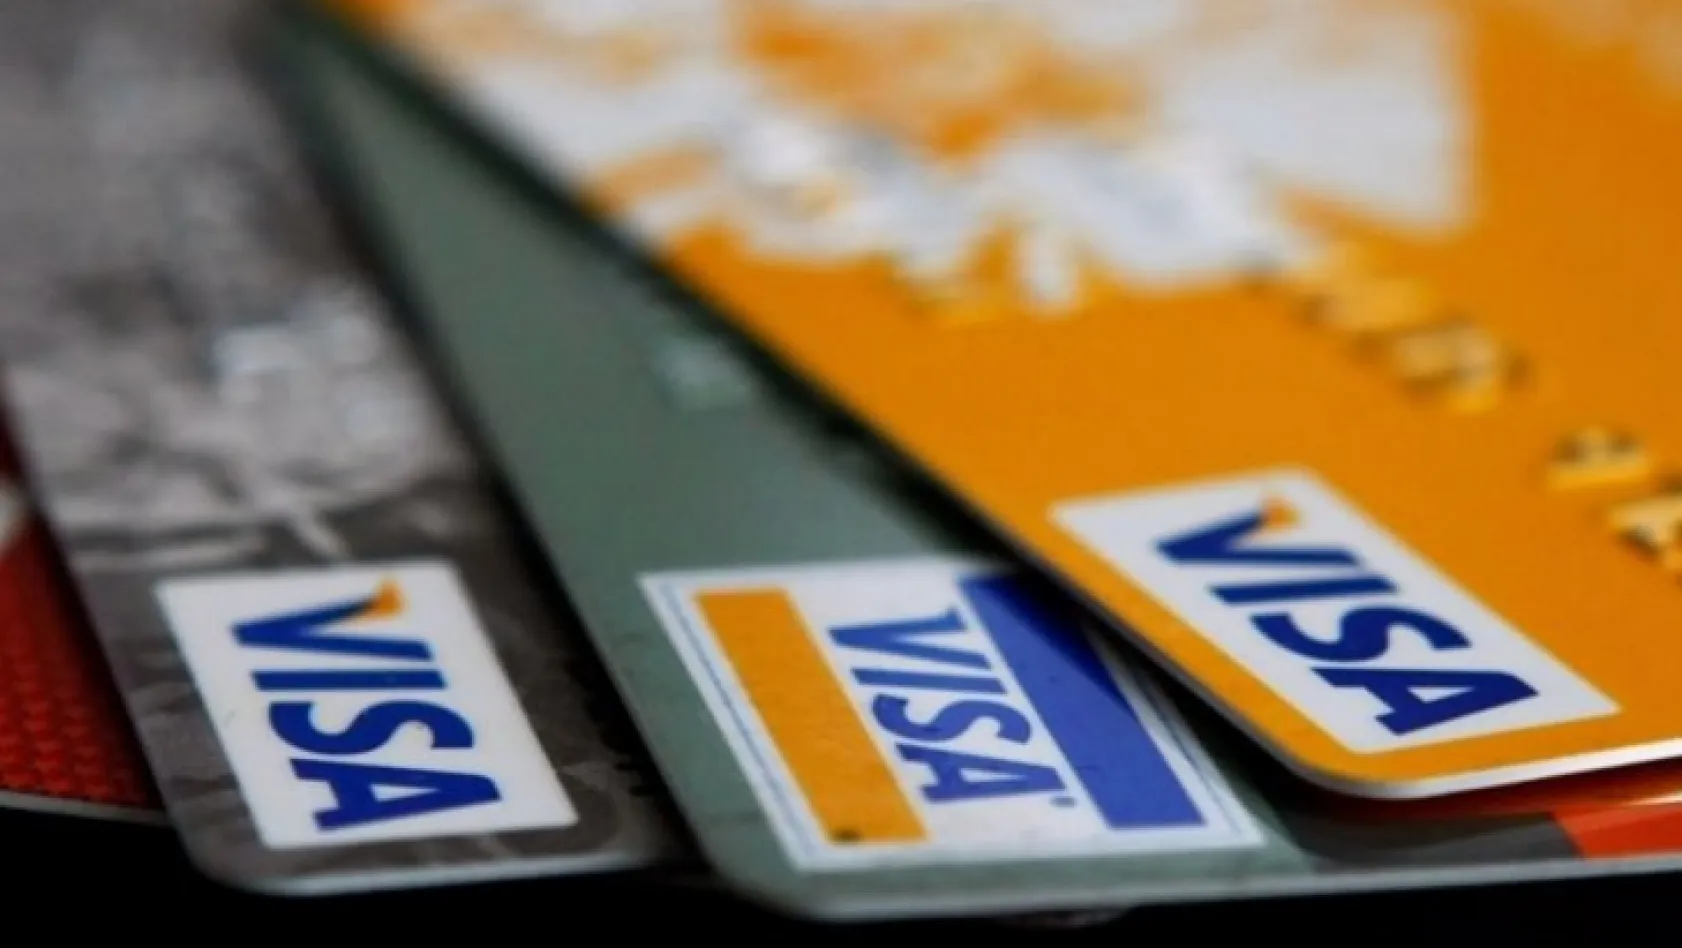 BDDK'dan kredi kartı borçları için yeni düzenleme